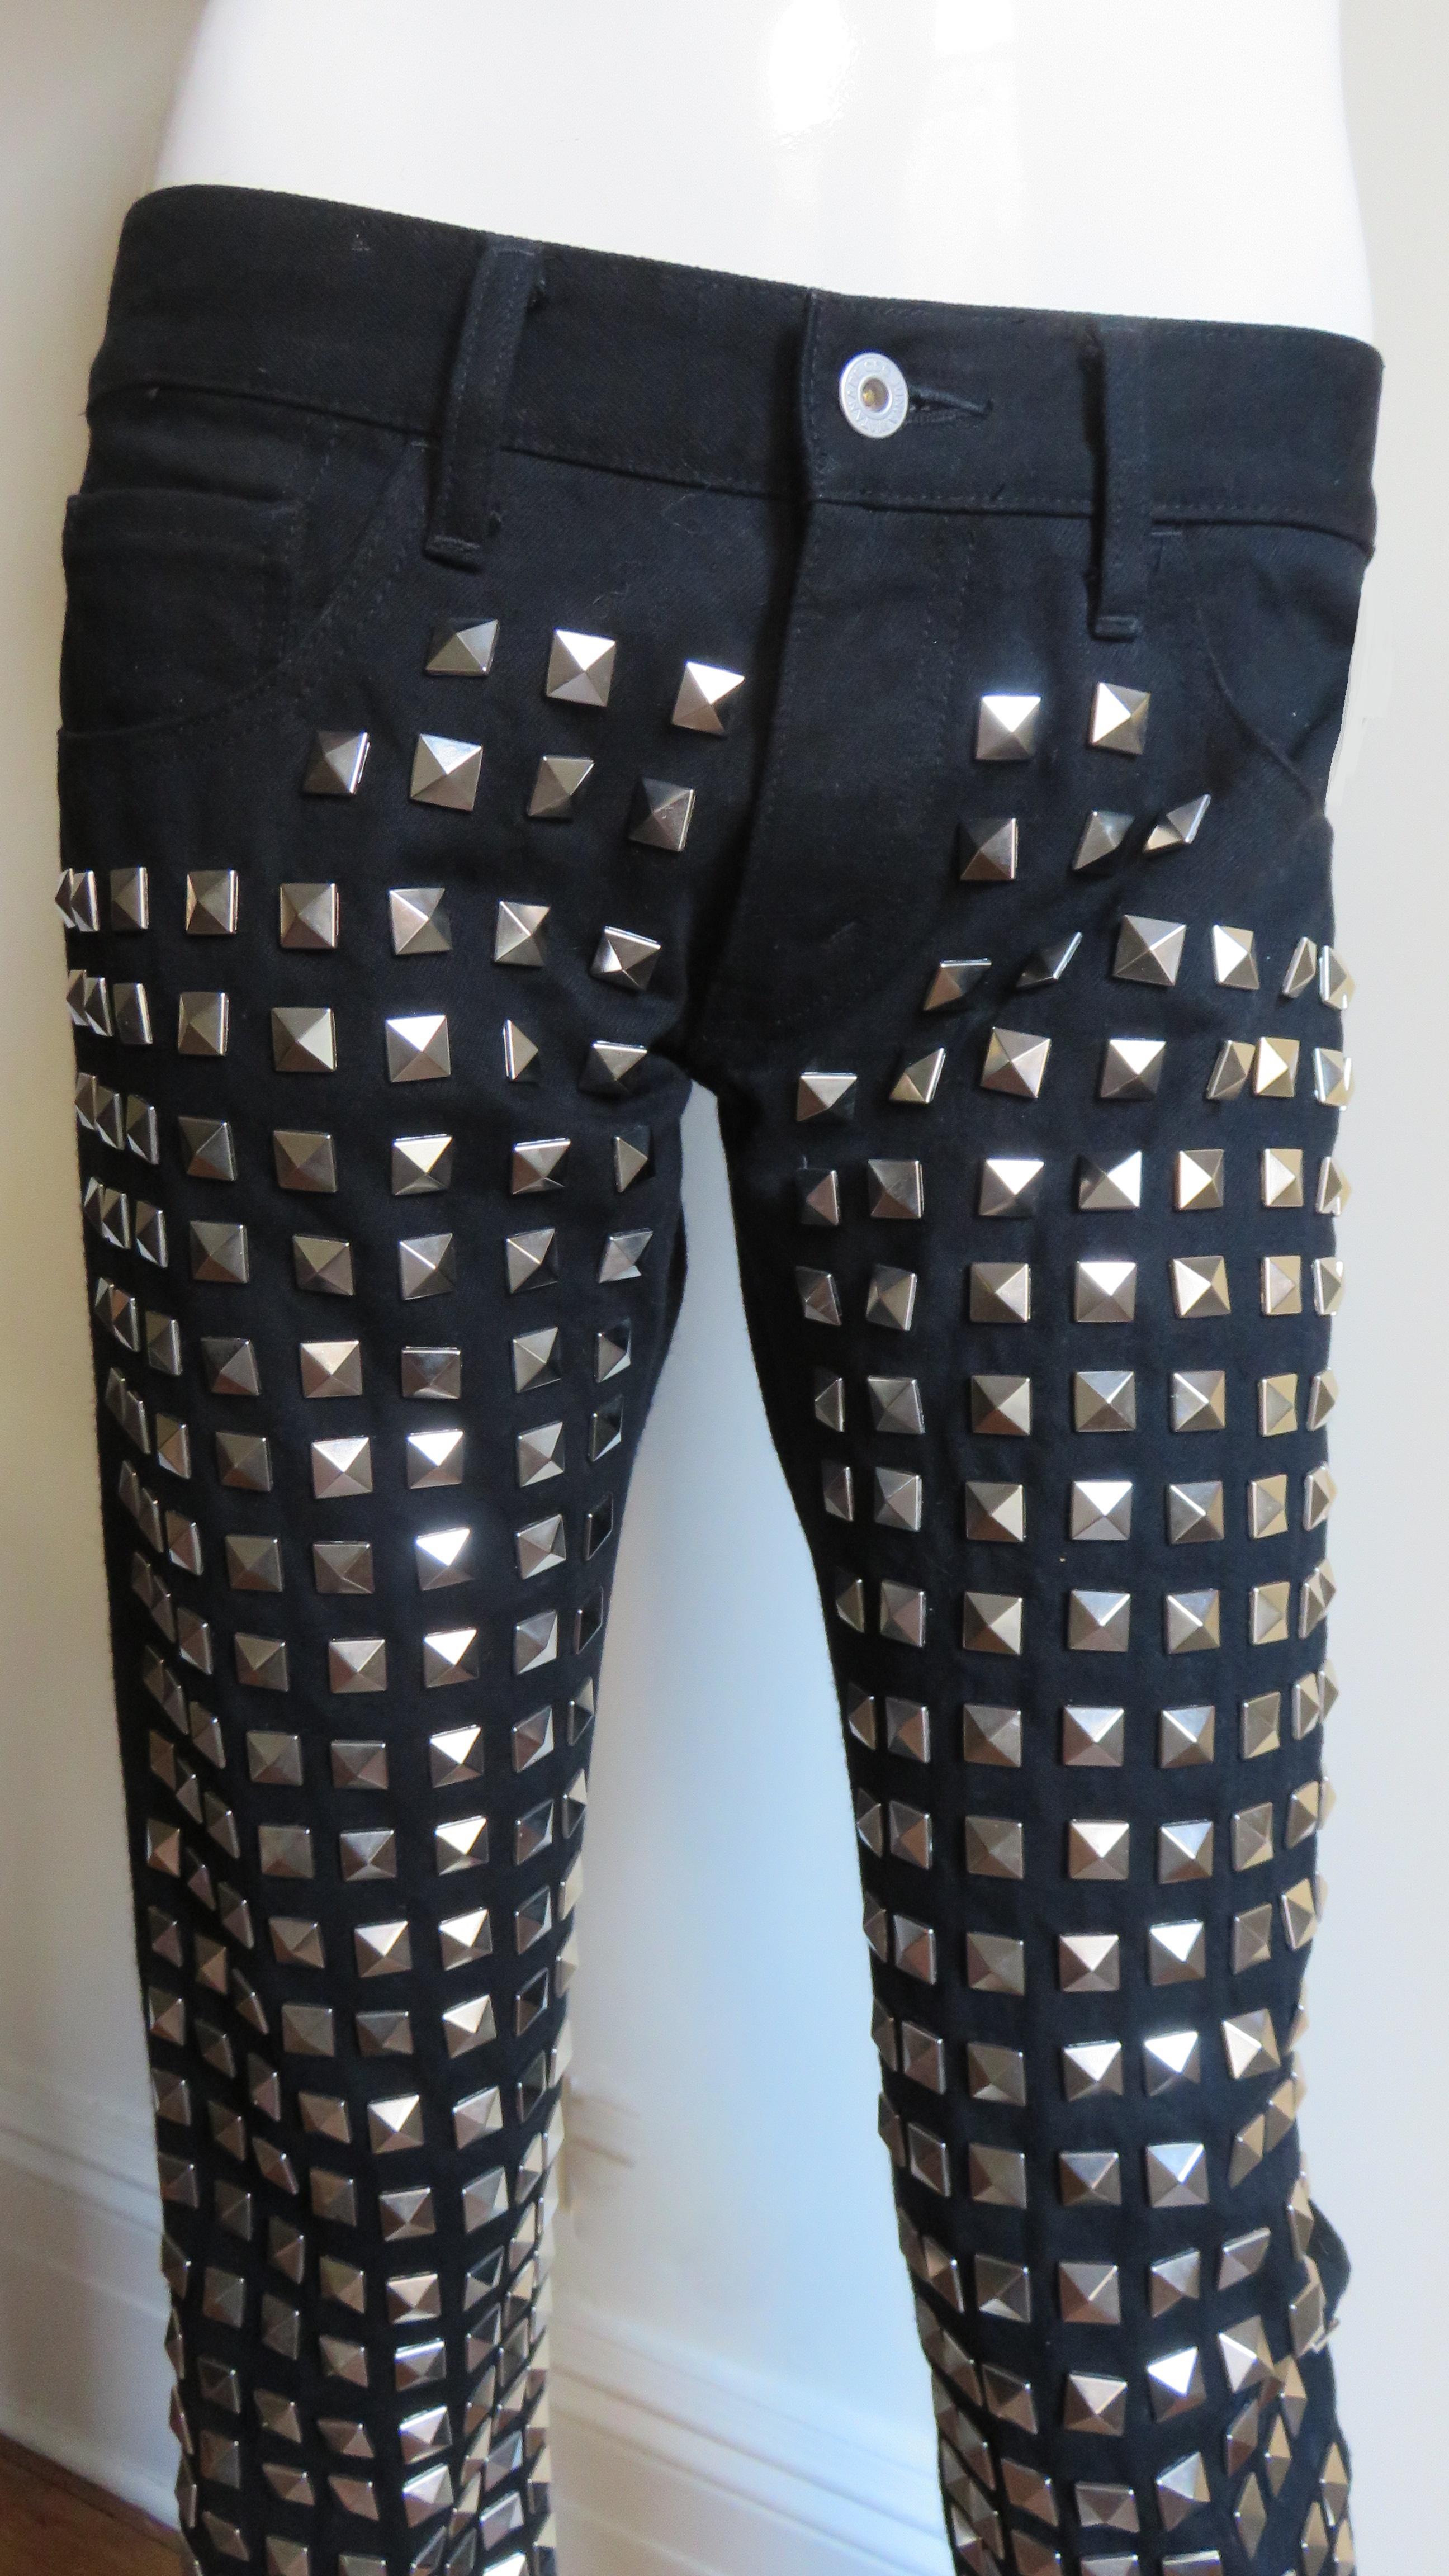 Fabuleux pantalon en laine et coton noirs de Junya Watanabe pour Comme des Garcons, collection CDG AD 2015.  Il s'agit d'un jean à taille basse, à jambe droite, avec 2 poches avant et 2 poches arrière plaquées. Le devant du pantalon est en coton